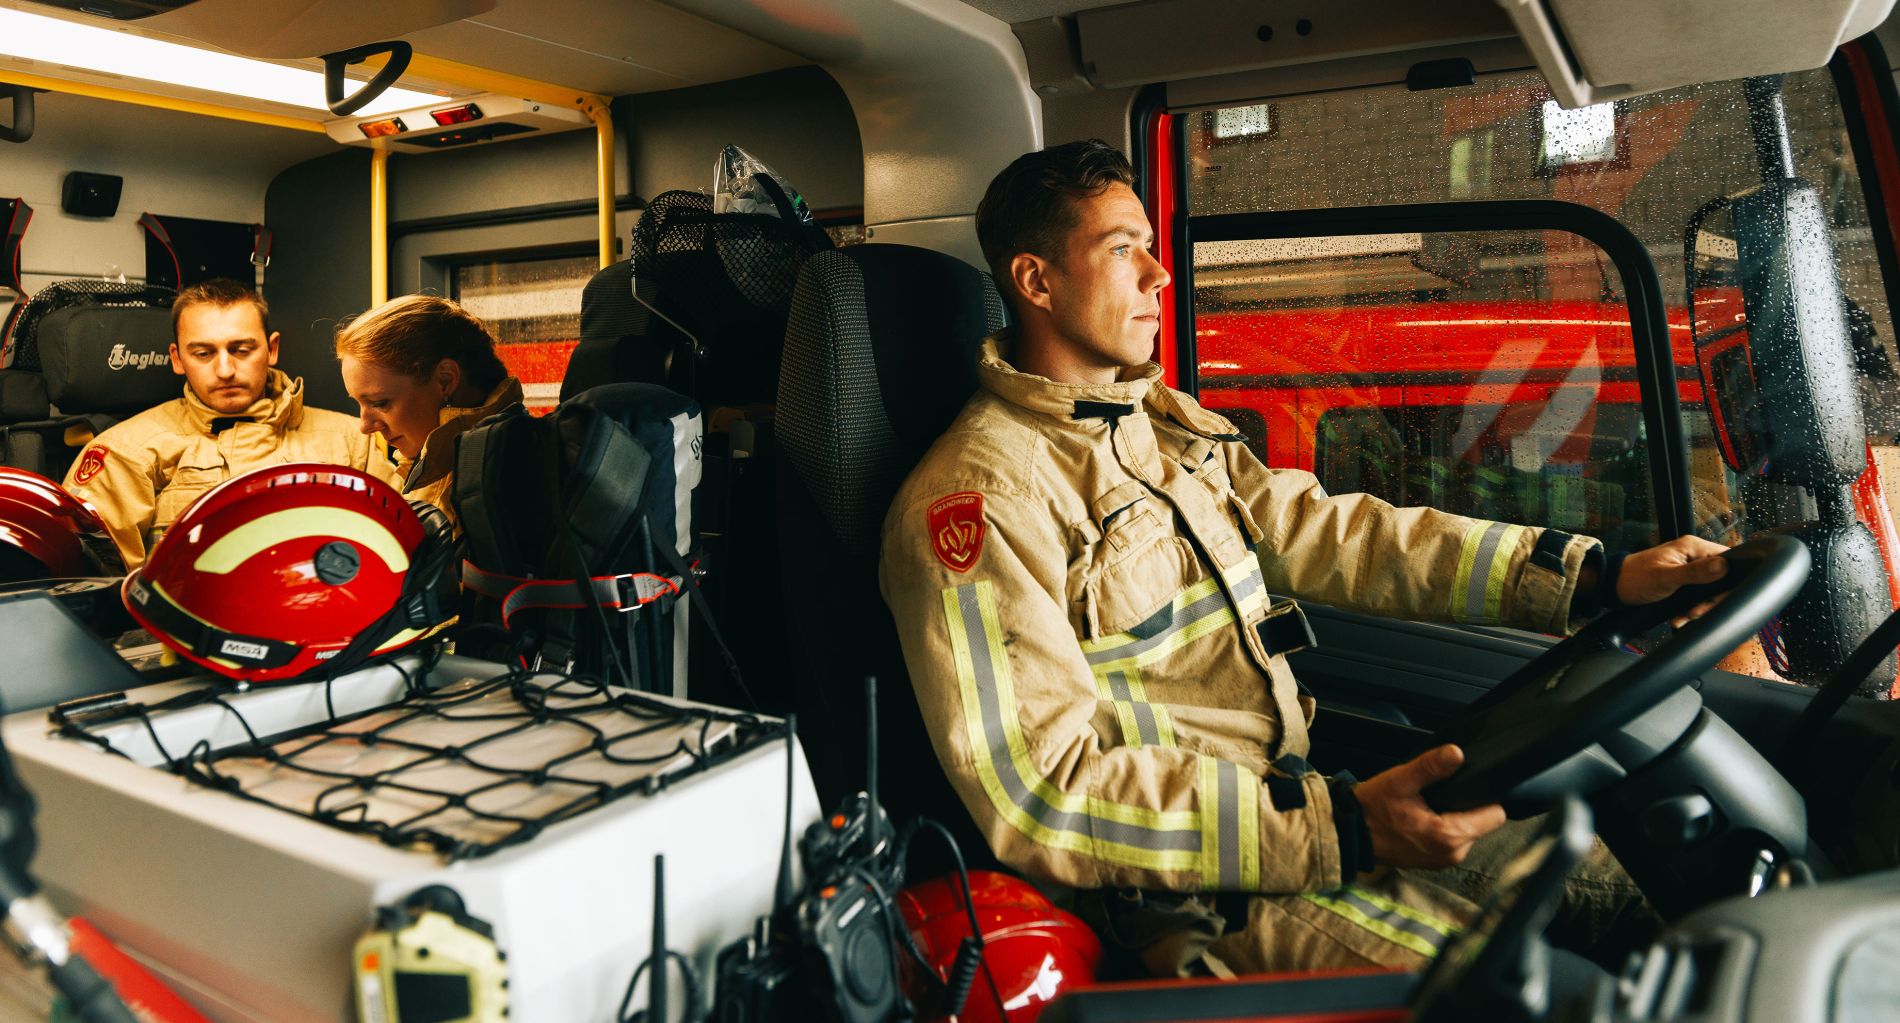 Foto in de cabine van een brandweer wagen, Brandweerman achter het stuur, achterin een brandweer-man en vrouw